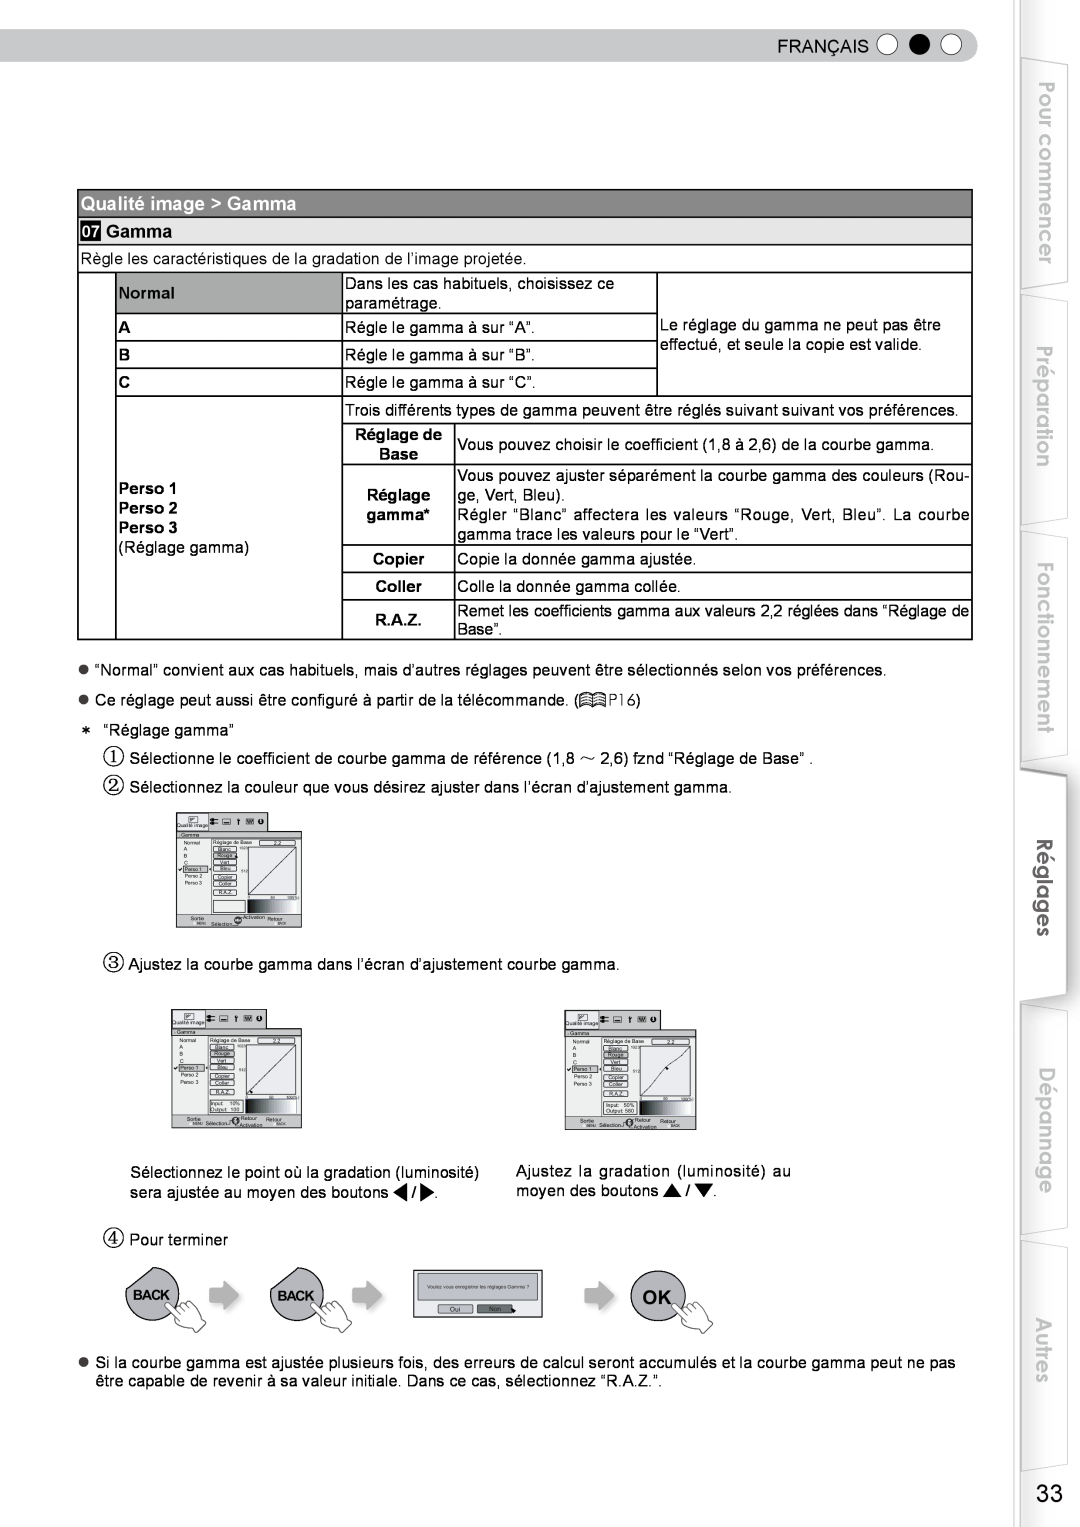 JVC DLA-RS10 manual Pour commencer Préparation Fonctionnement, Réglages, Dépannage Autres, Qualité image Gamma, Français 